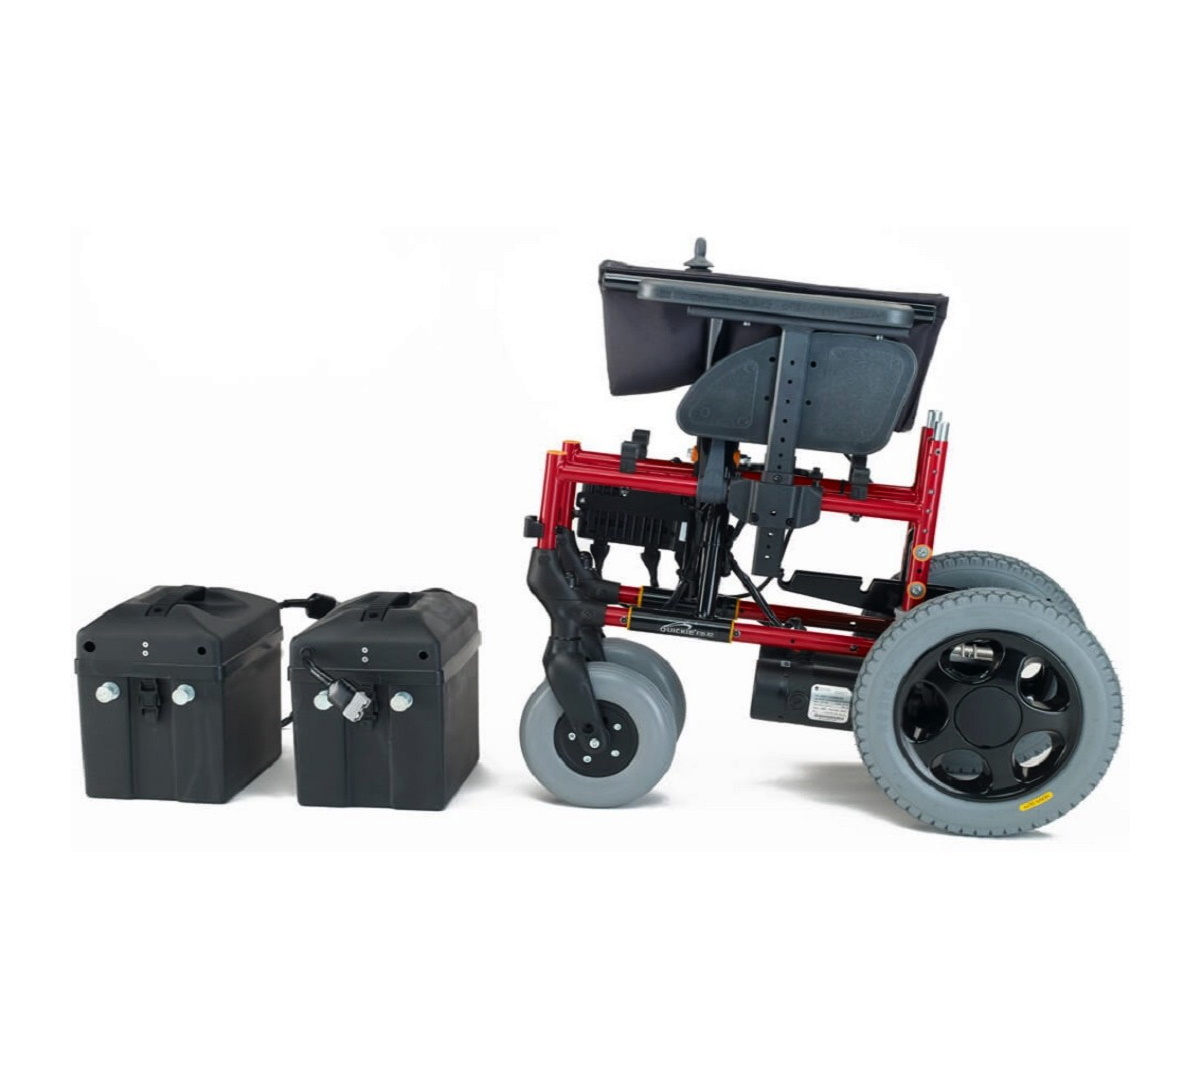 QUICKIE | F35 R2 Katlanabilir Akülü Tekerlekli Sandalye (ÖN SİPARİŞ ZORUNLUDUR) | Akülü Tekerlekli Sandalye | Tekerlekli Sandalye